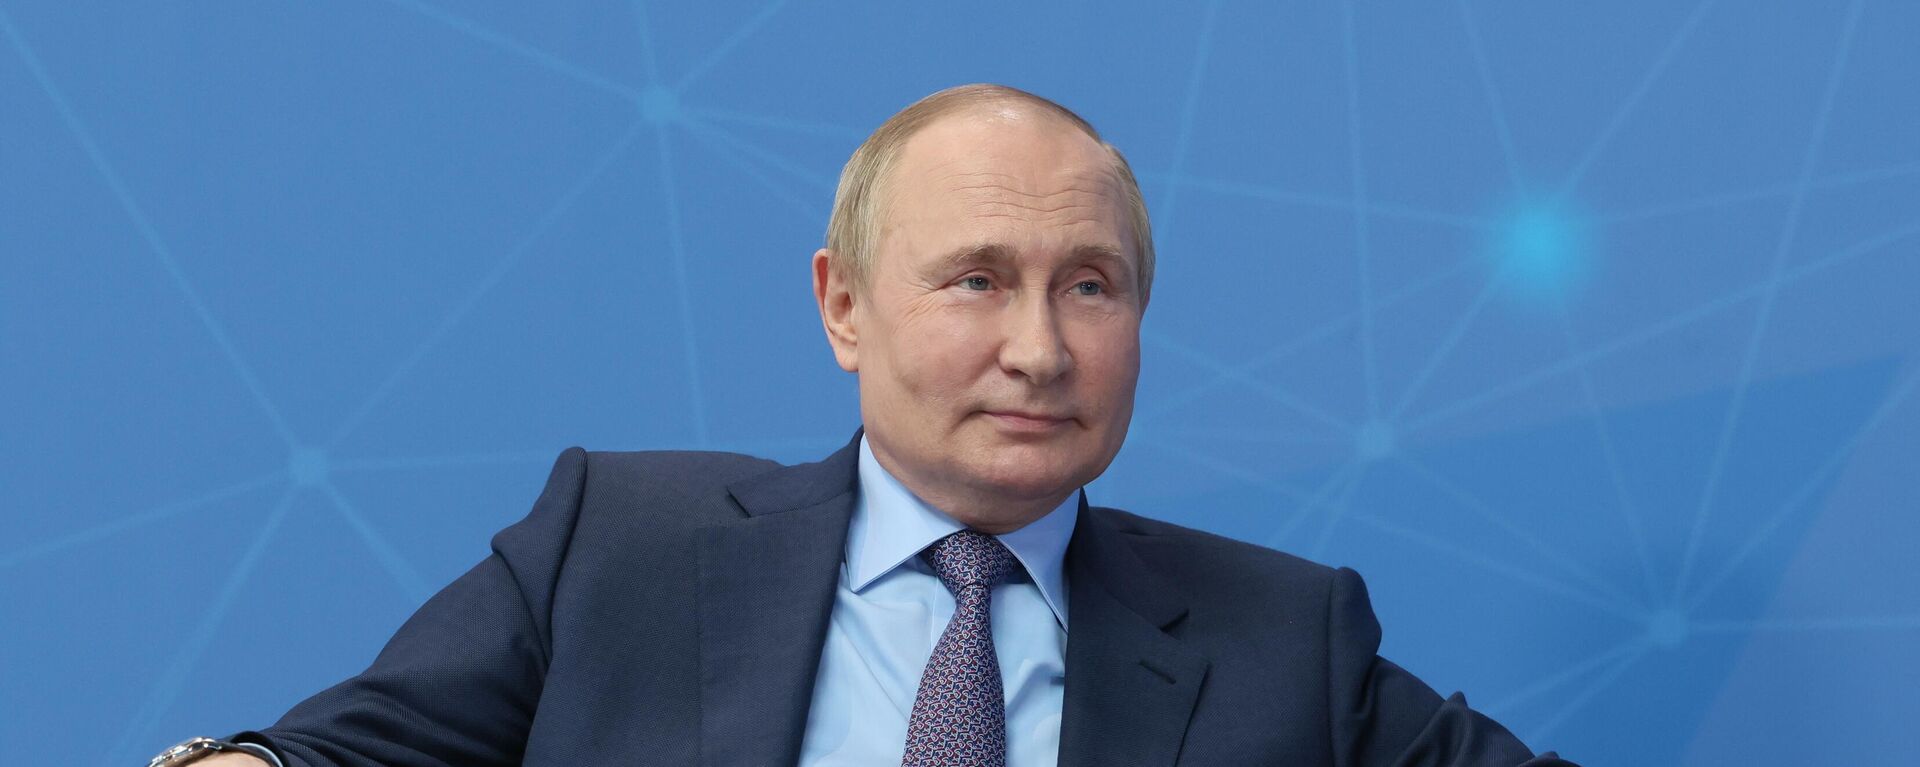 Vladímir Putin, el presidente de Rusia - Sputnik Mundo, 1920, 09.06.2022